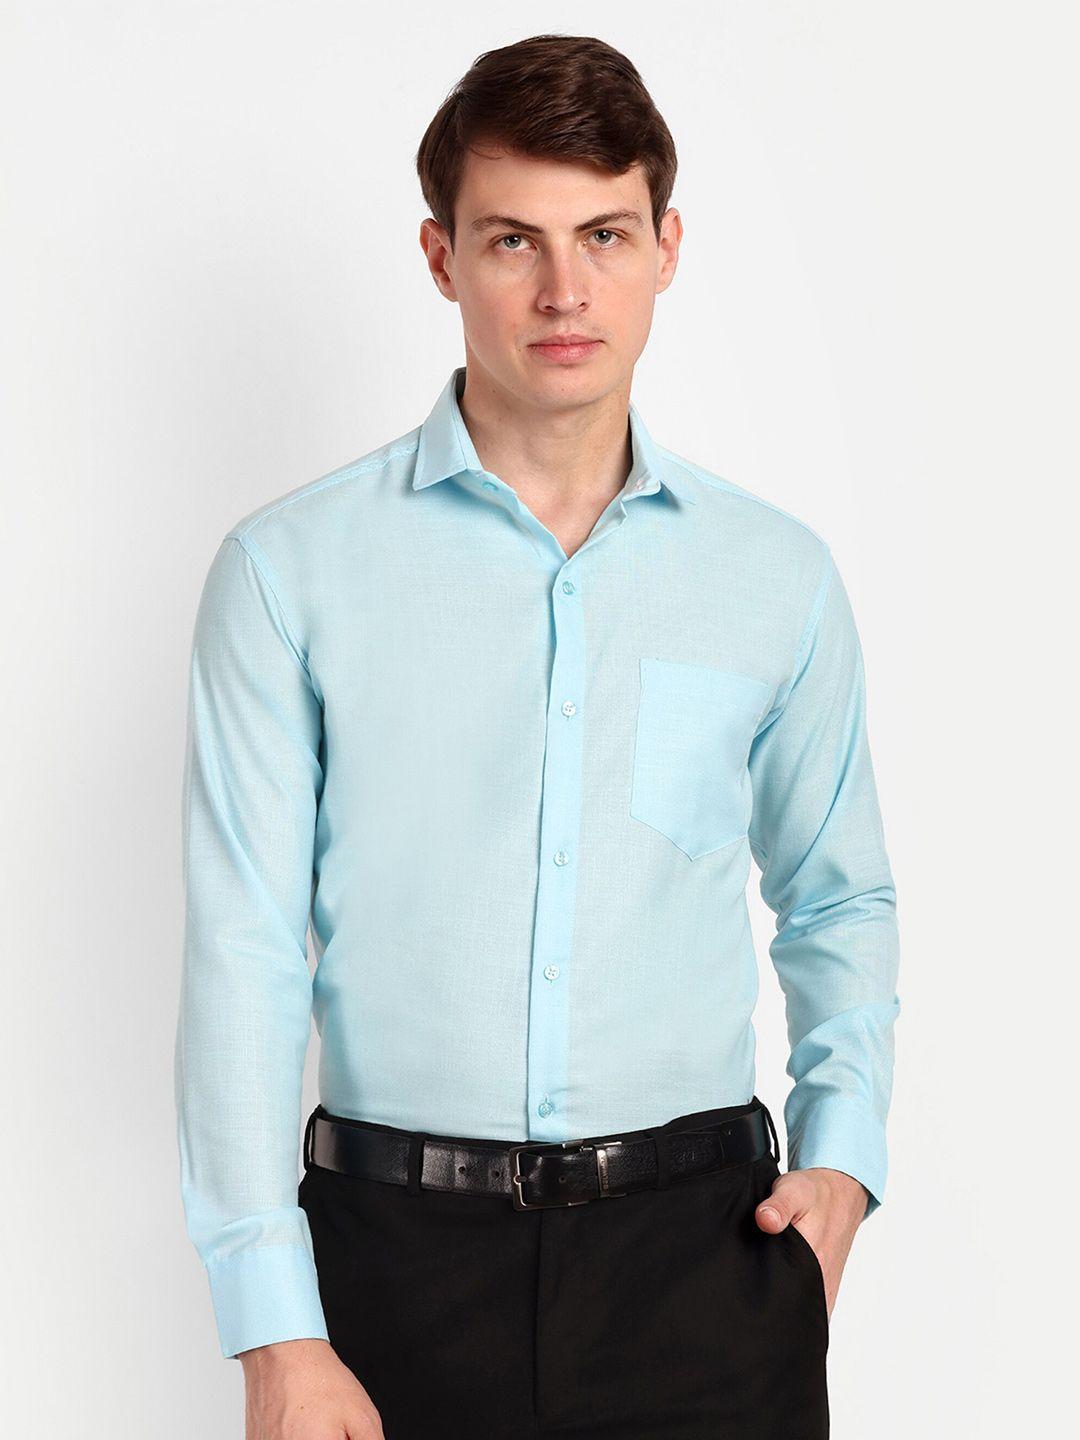 colorwings men turquoise blue comfort semi sheer formal shirt